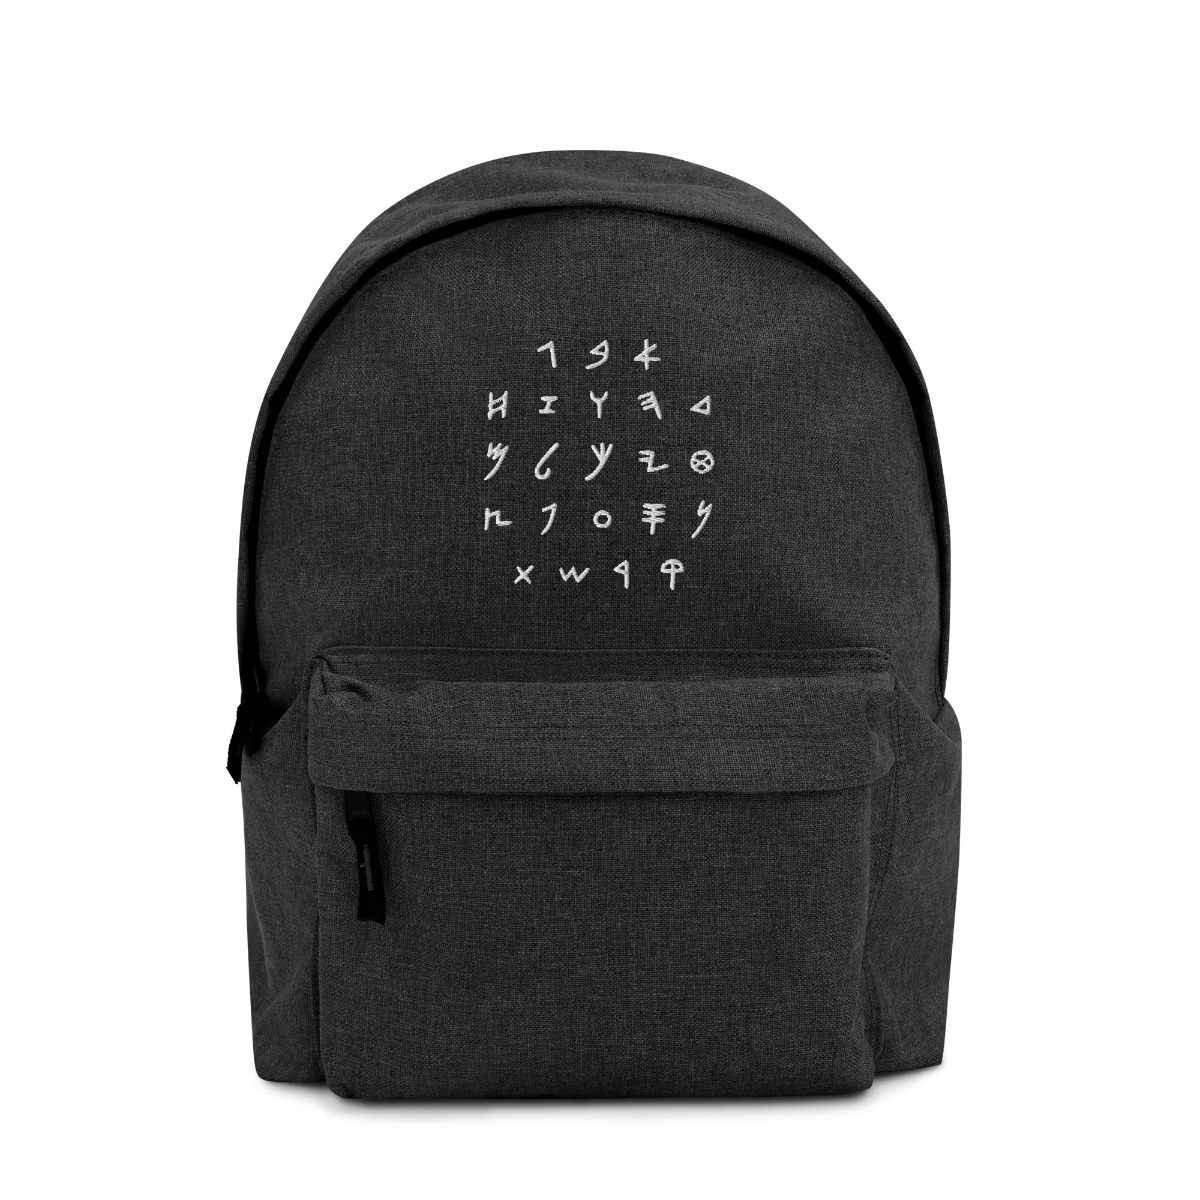 Hebrew Alphabet Embroidered Backpack - 1